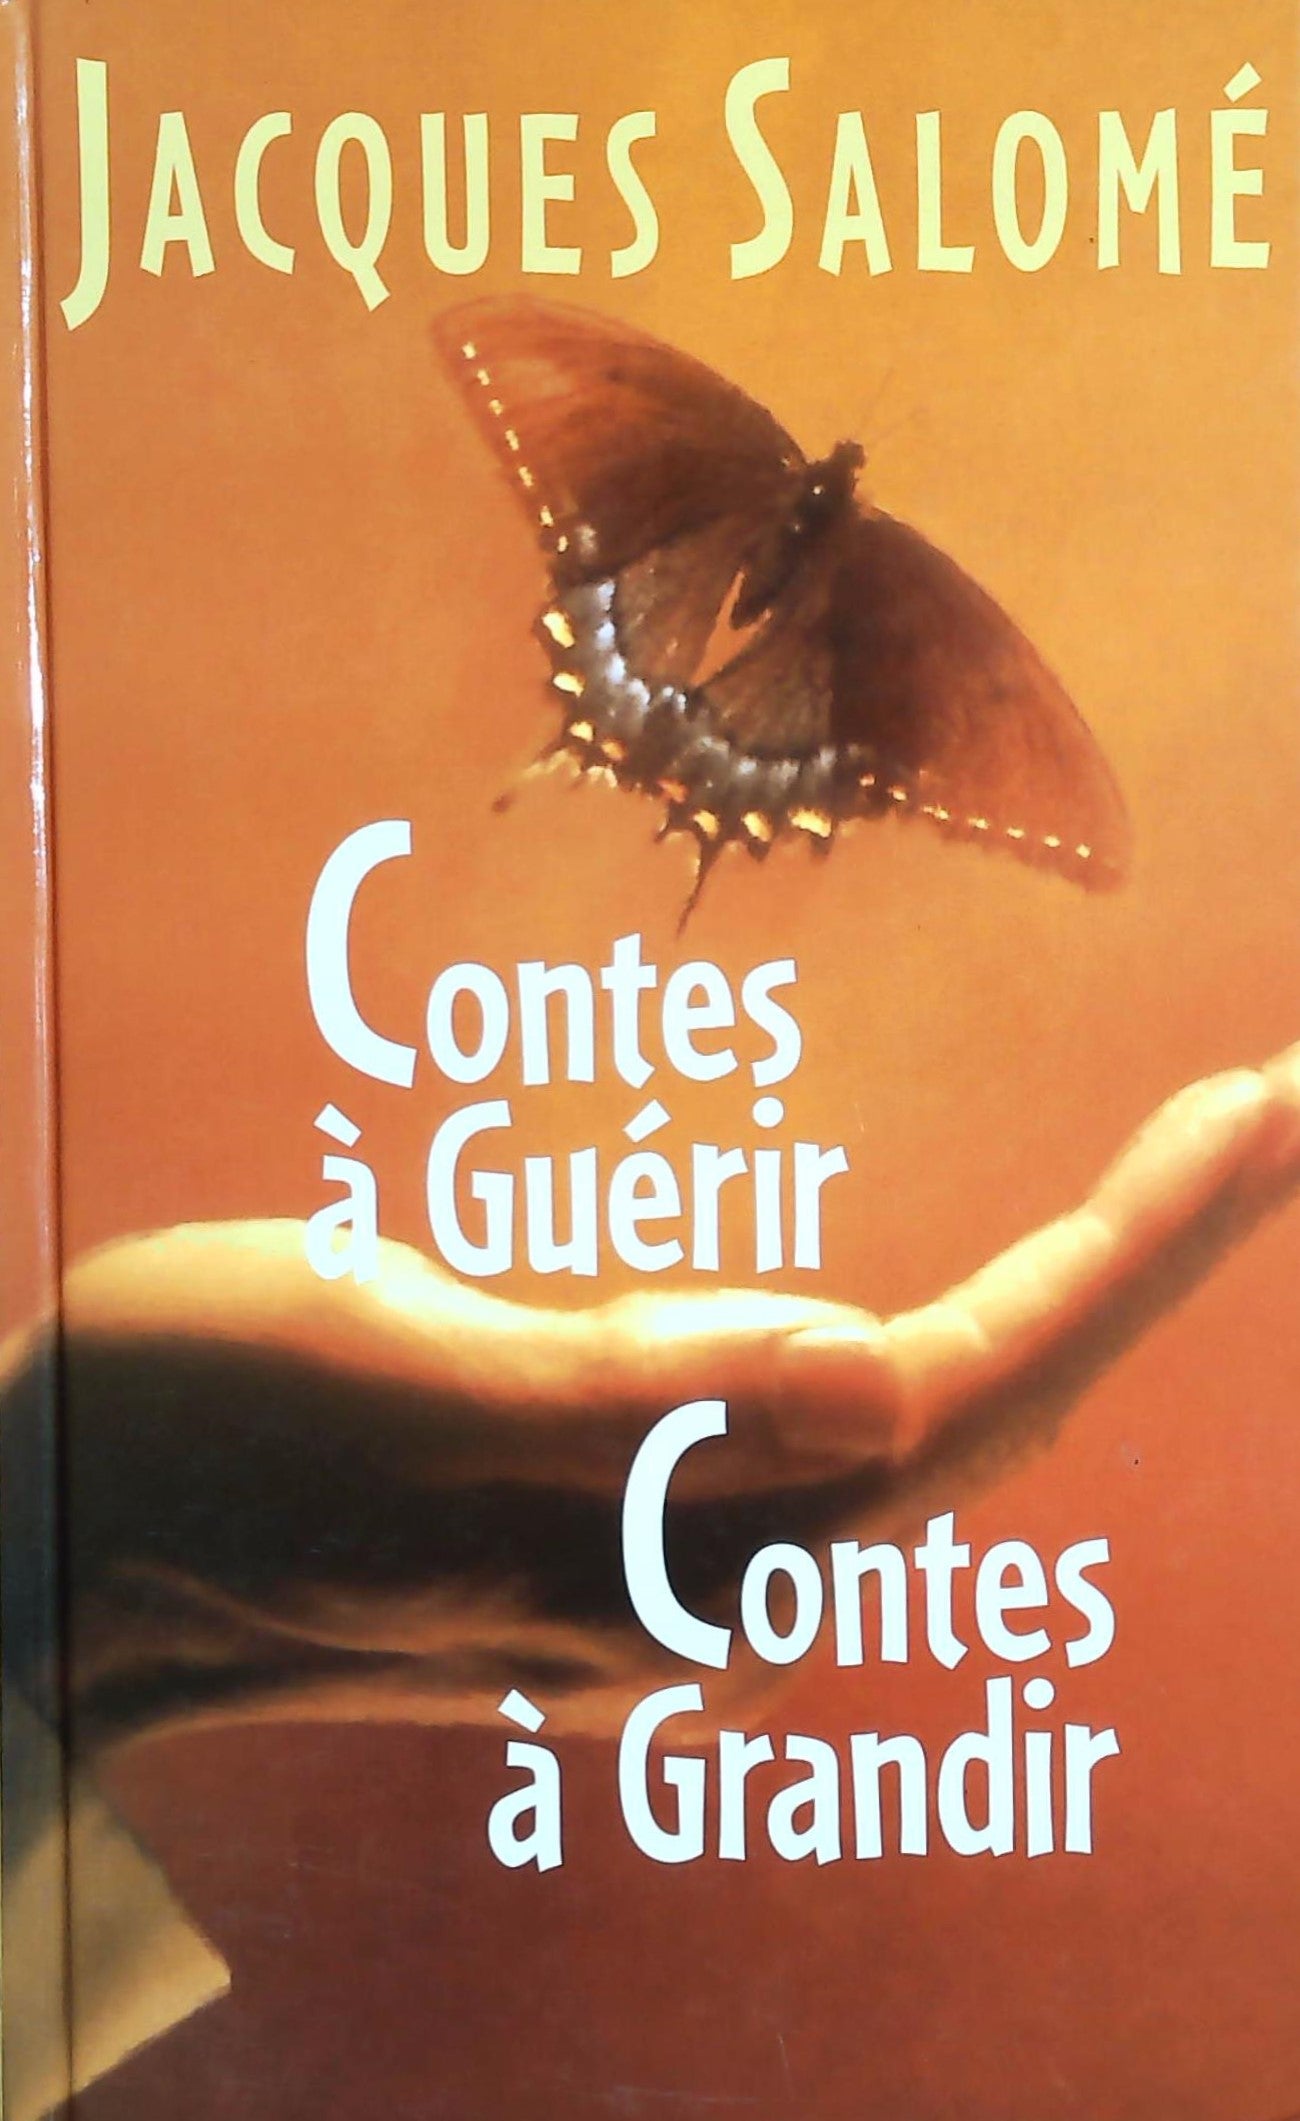 Livre ISBN 2744115843 Contes à guérir – Contes à grandir (Jacques Salomé)